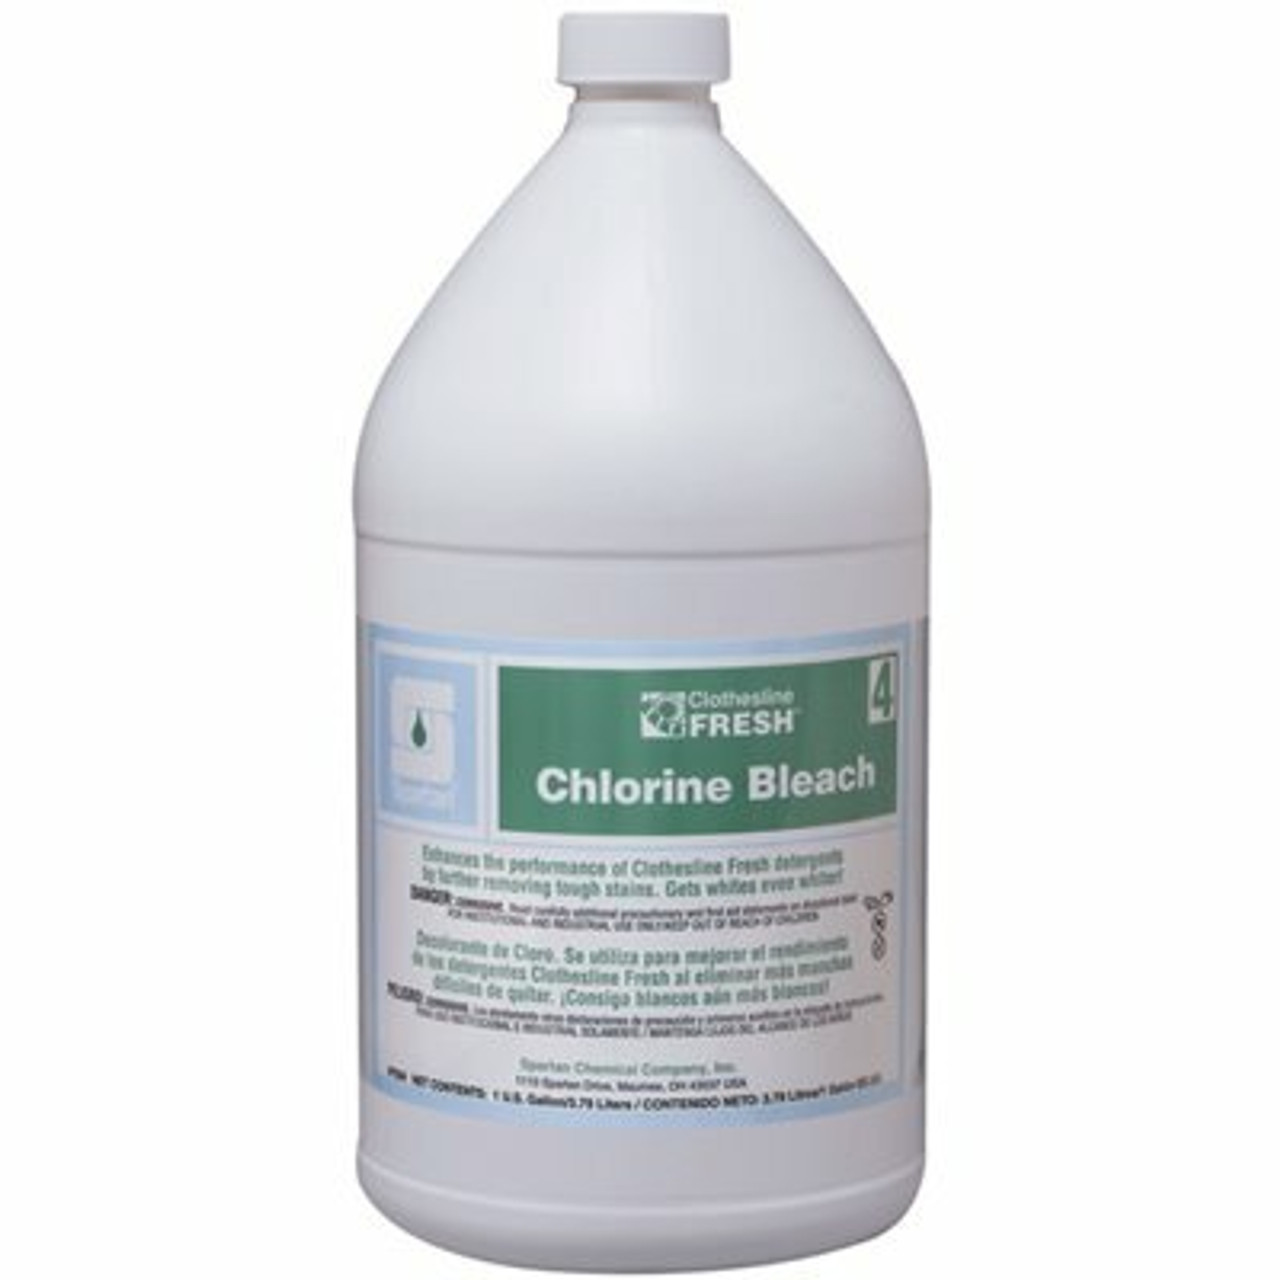 Spartan Chemical Co. Clothesline Fresh 1 Gallon Chlorine Bleach (4 Per Pack)